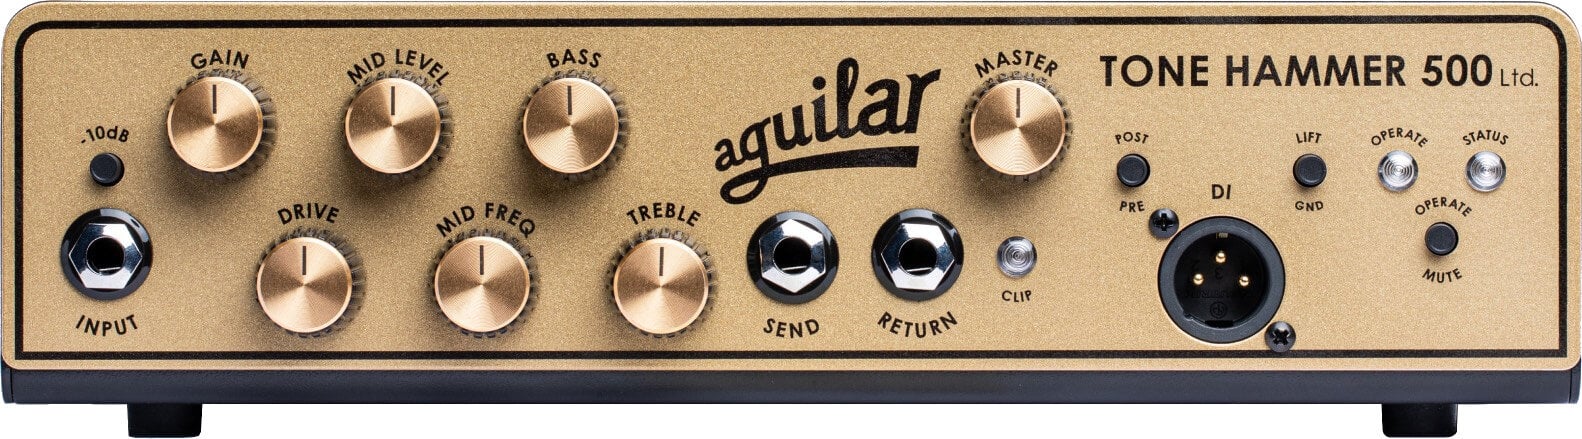 Transistor Bassverstärker Aguilar Tone Hammer 500 Gold